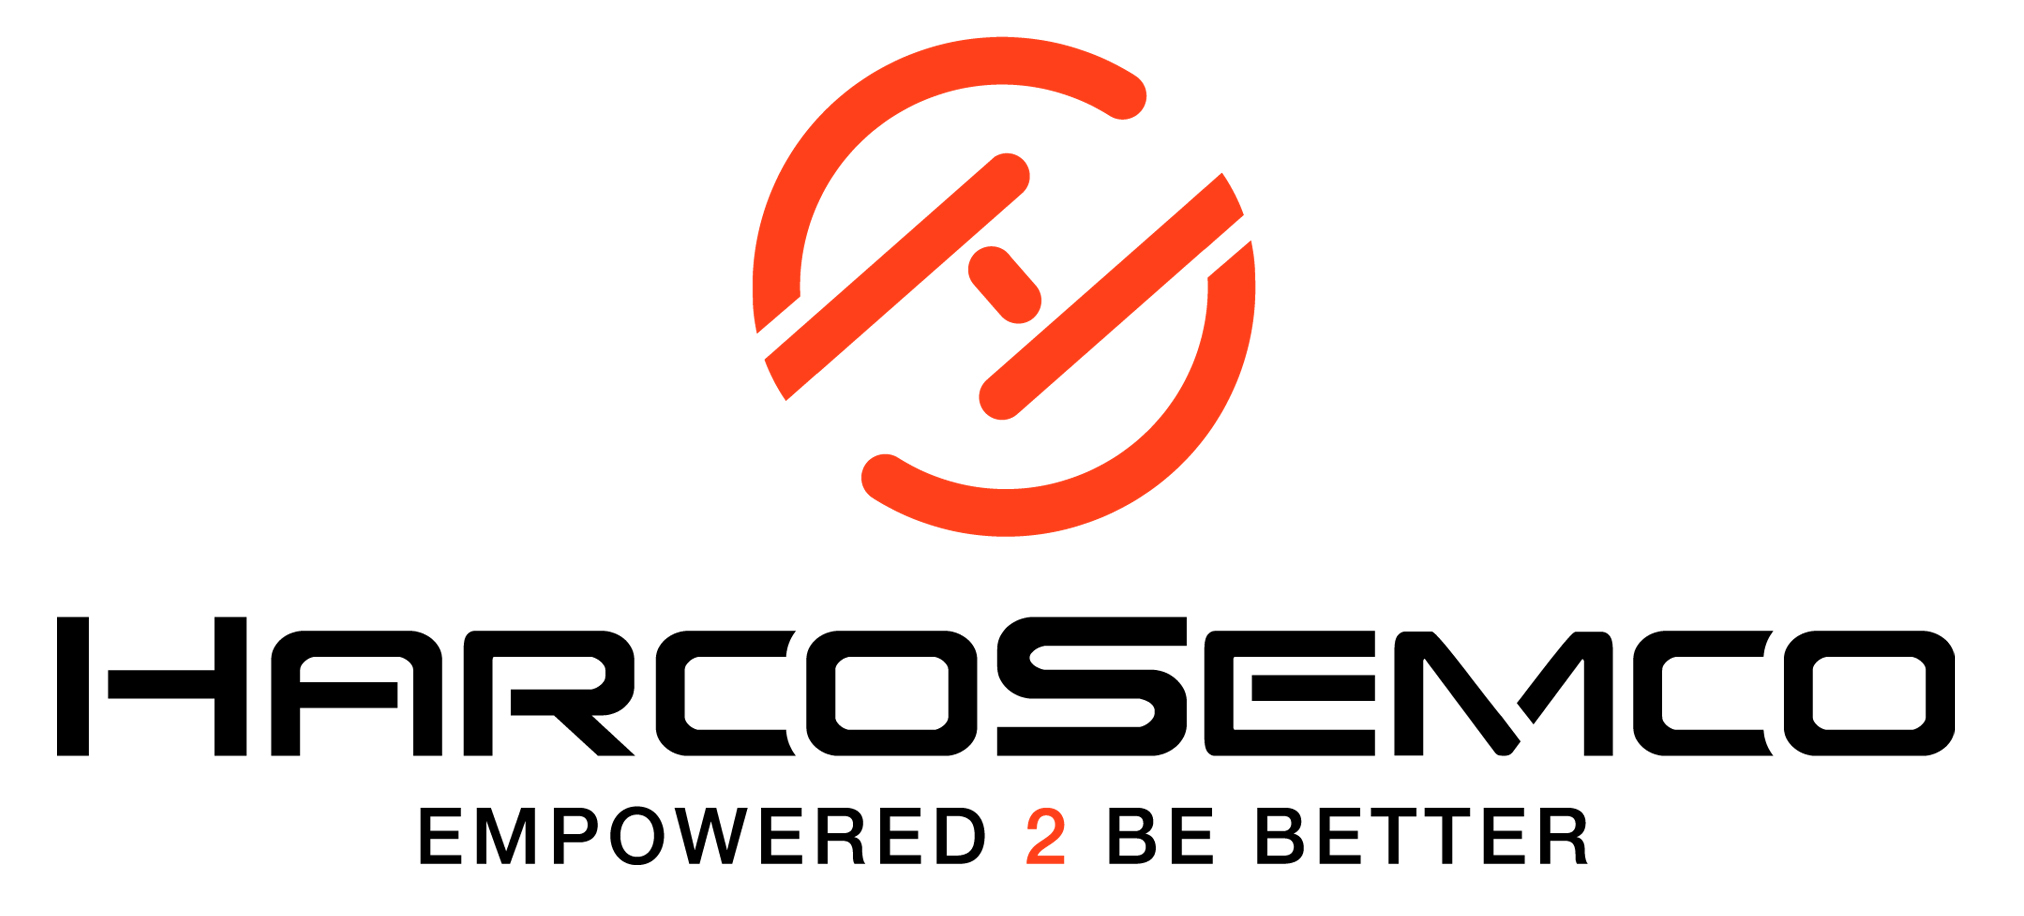 HarcoSemco Logo